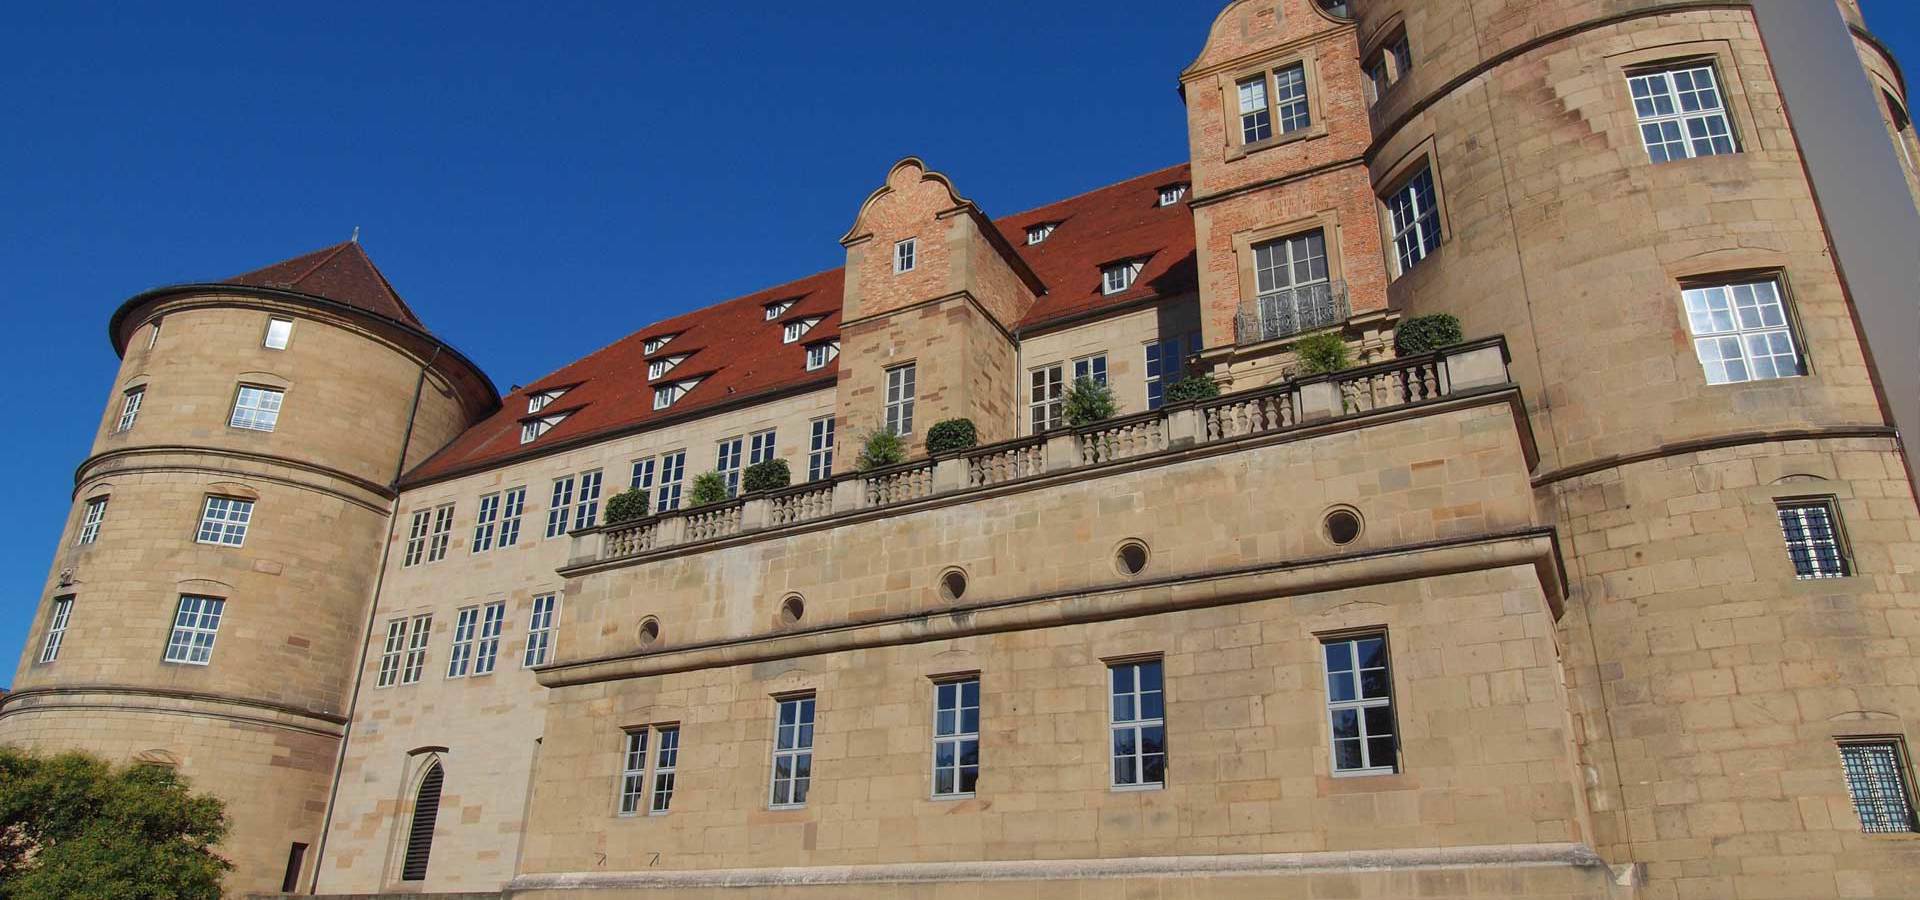 Stuttgart. The Old Castle Altes Schloss.